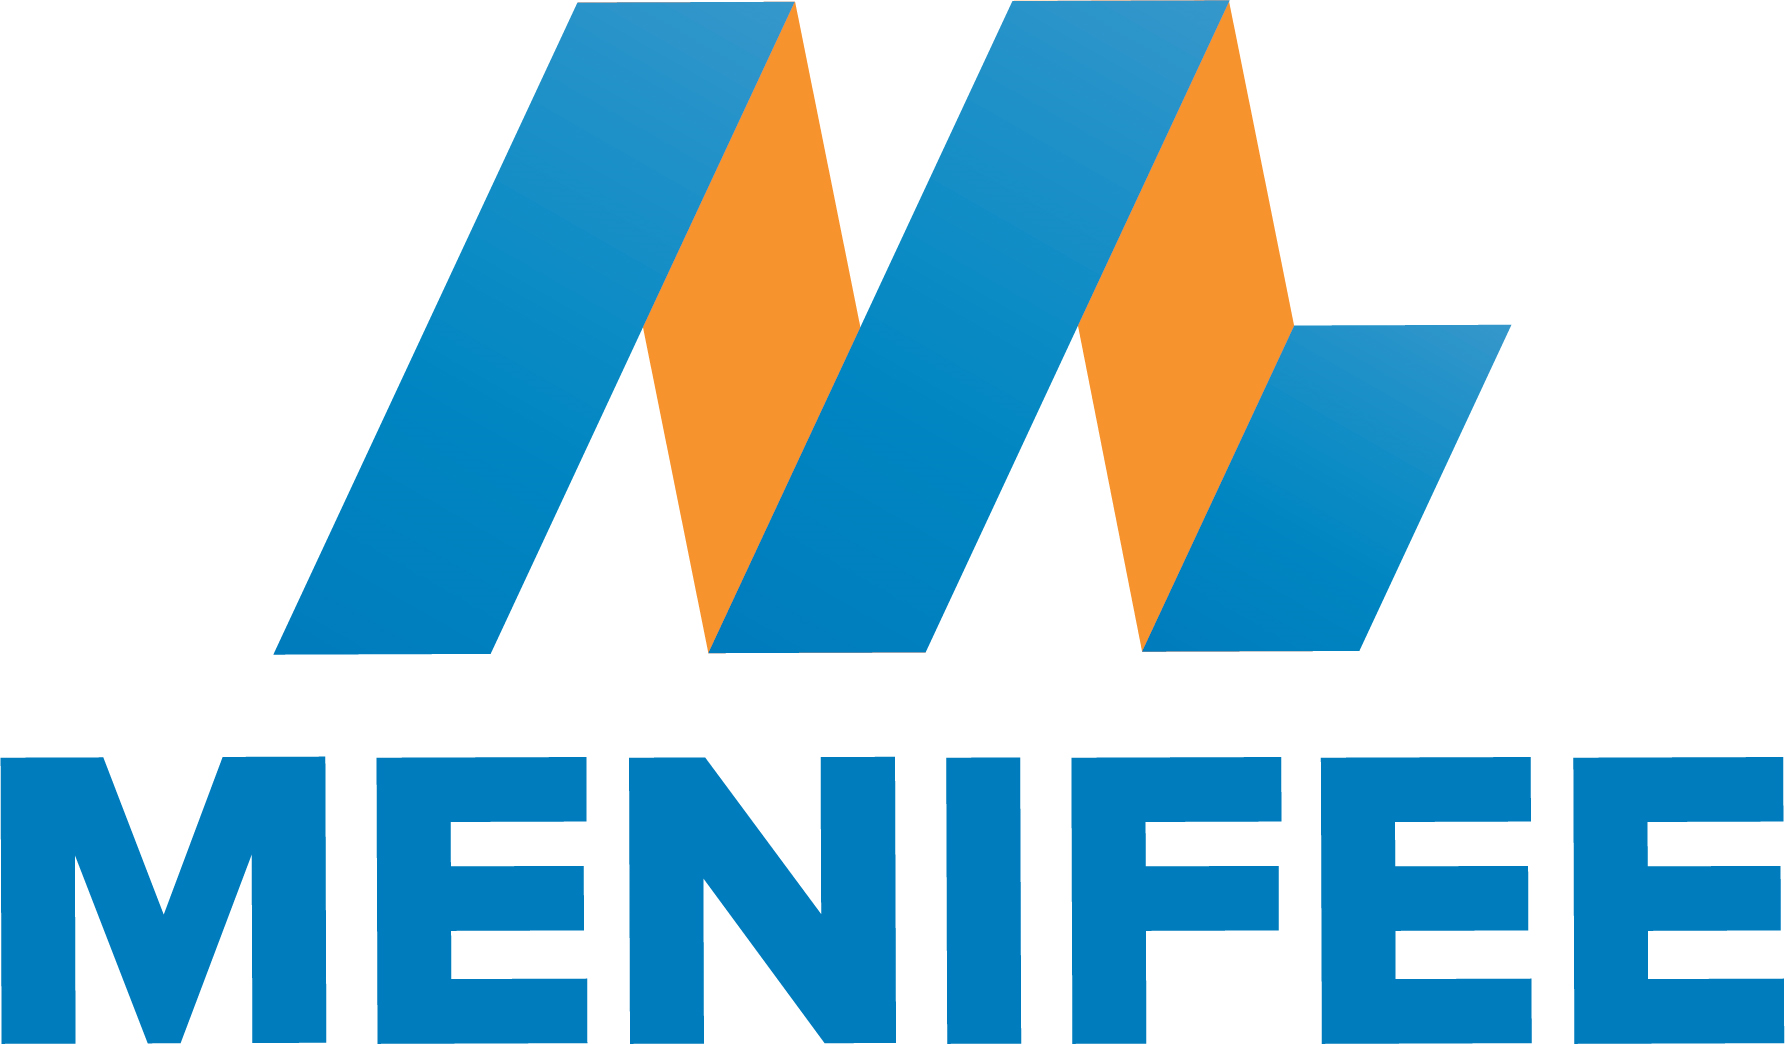 City of Menifee Company Logo